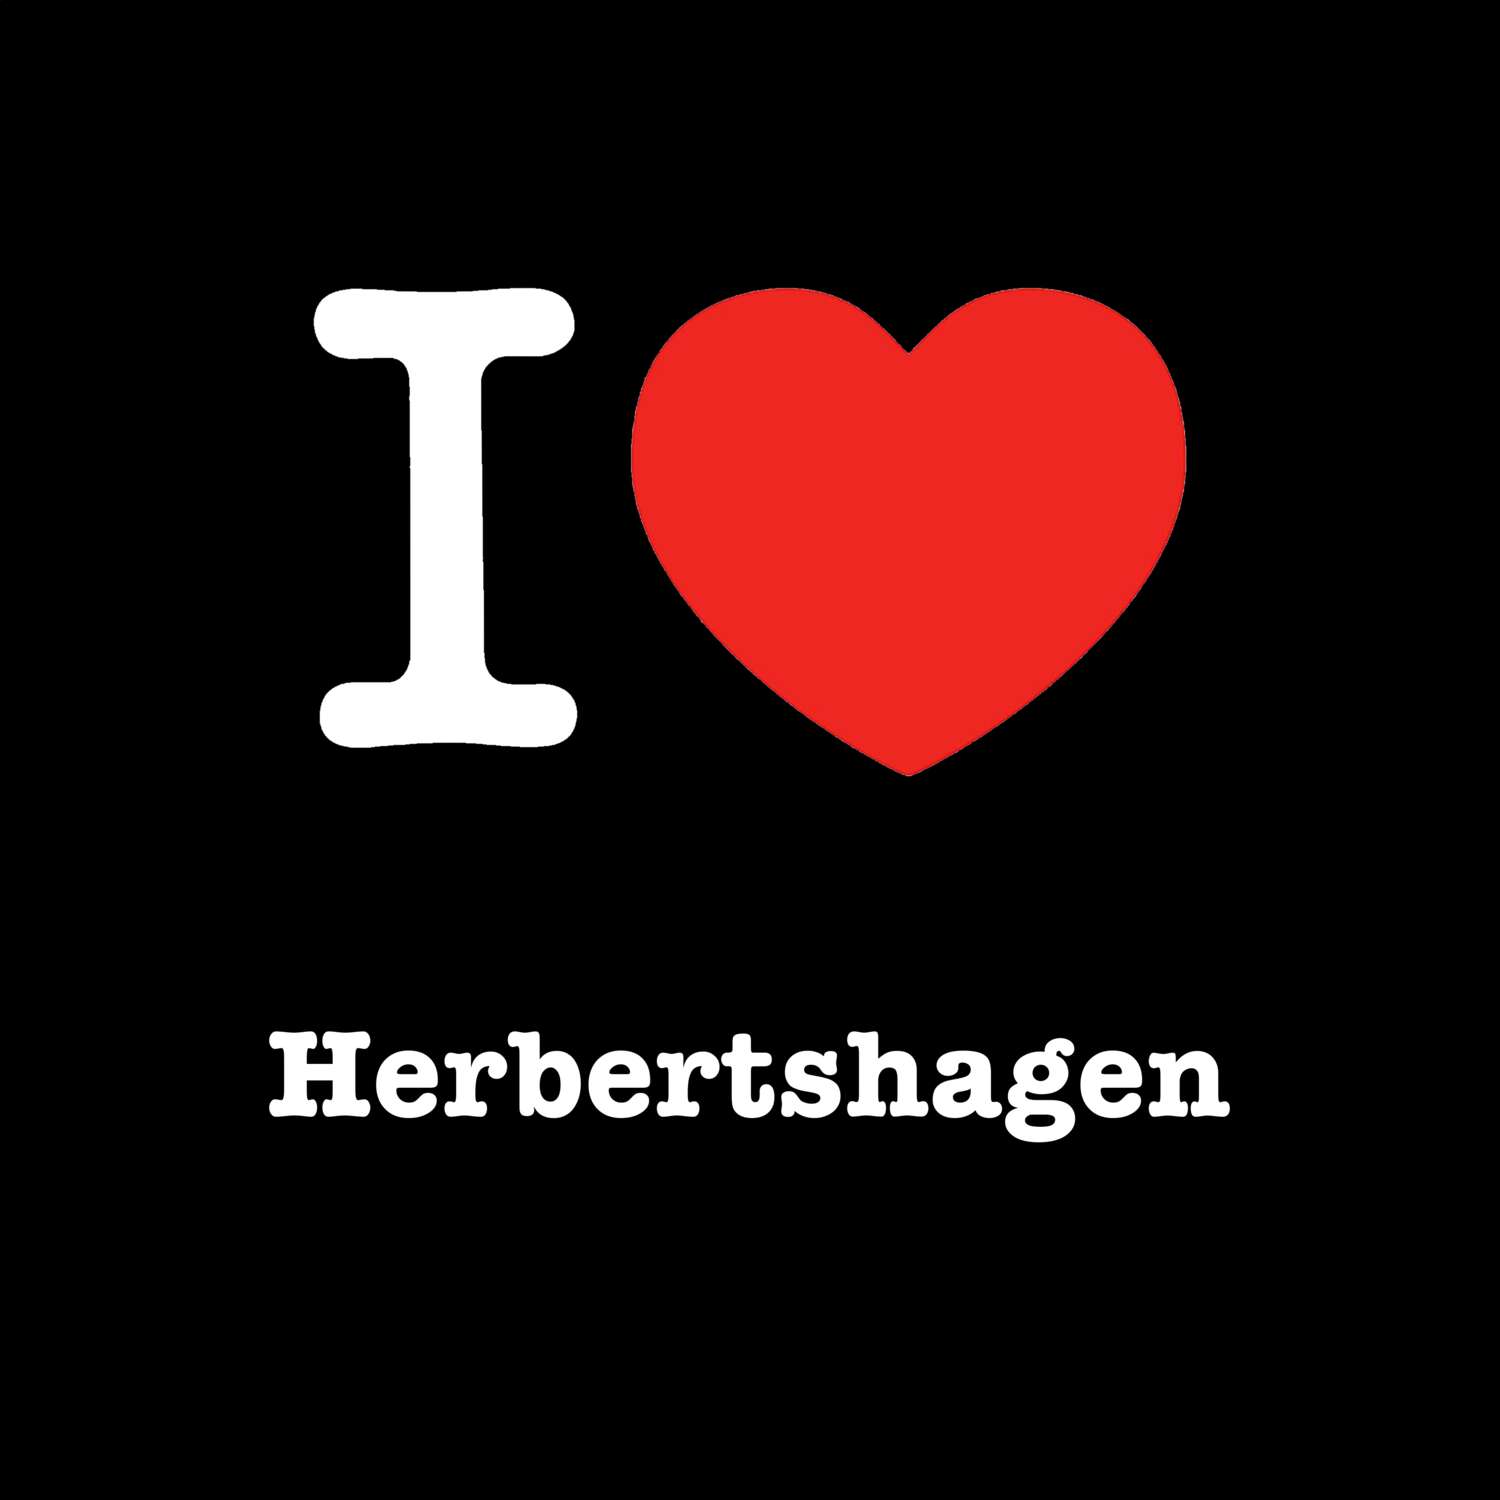 Herbertshagen T-Shirt »I love«